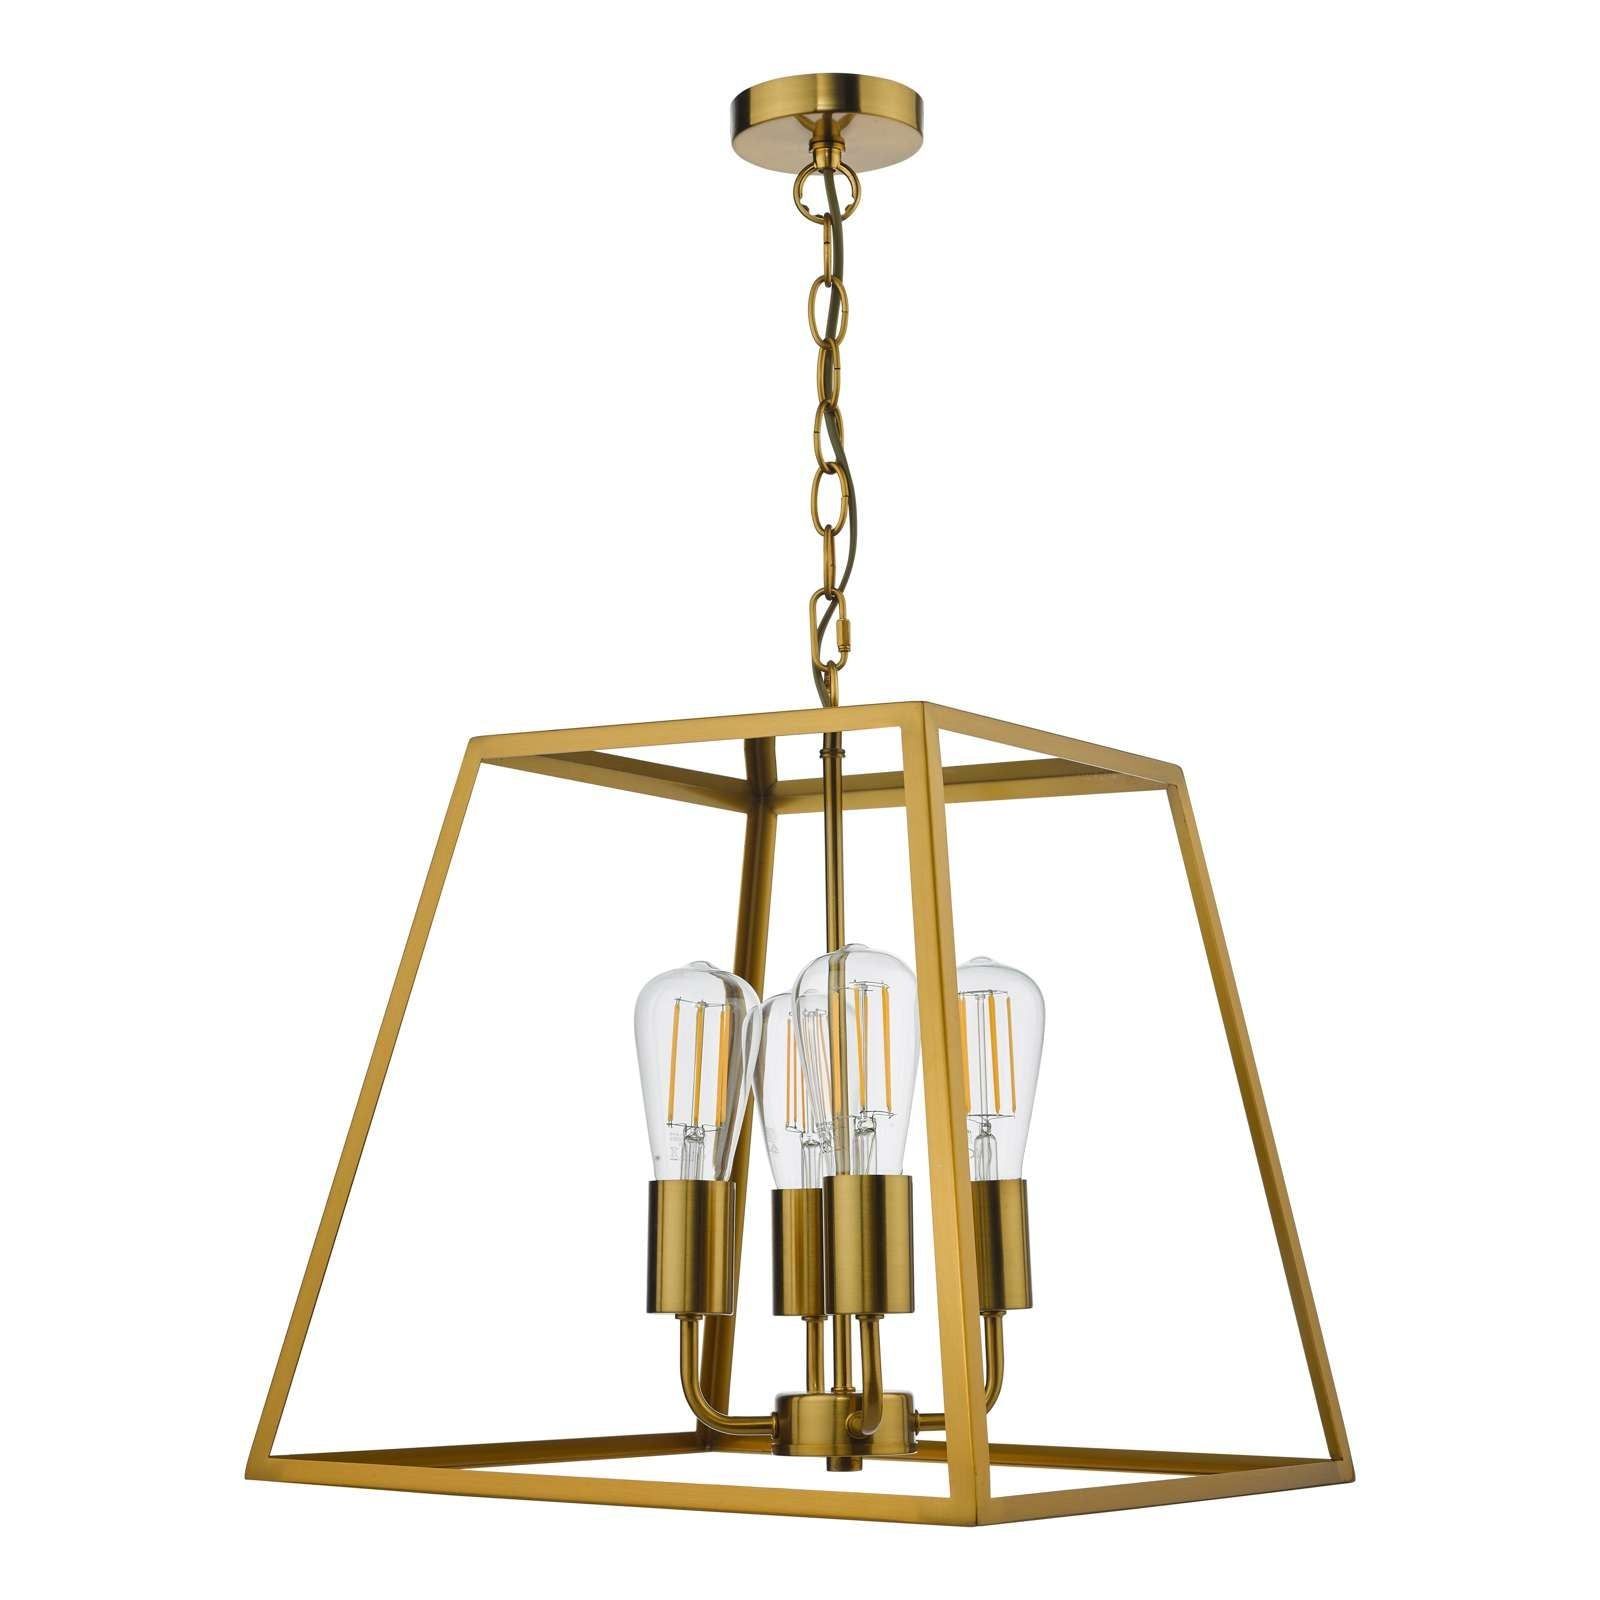 Dar Academy 4Lt Lantern Ceiling Light - Natural Brass IP20